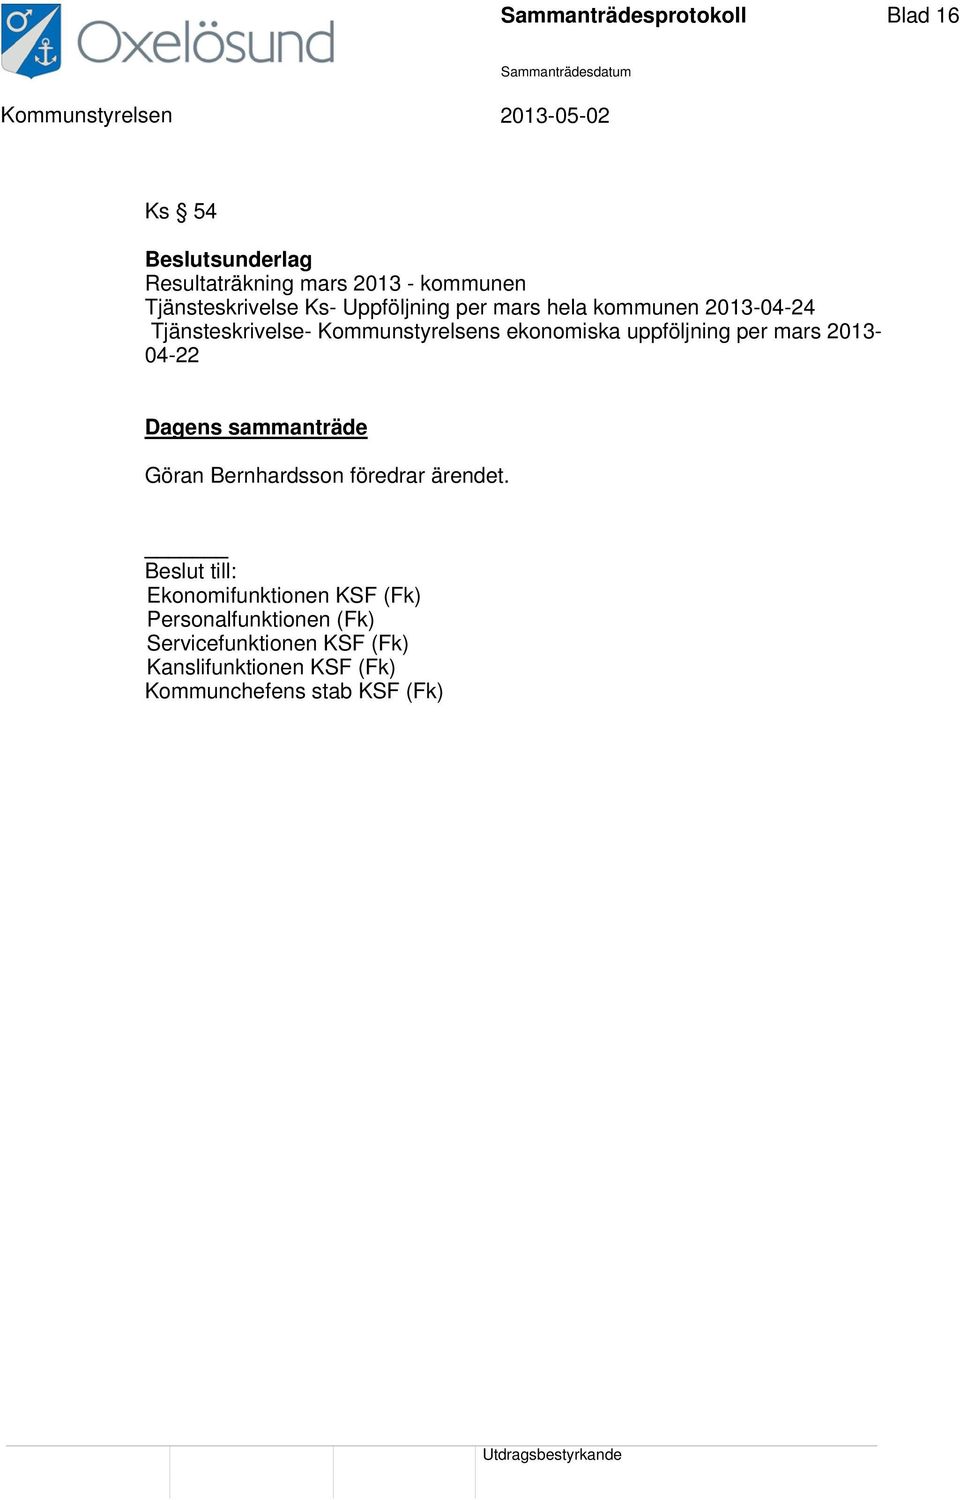 per mars 2013-04-22 Dagens sammanträde Göran Bernhardsson föredrar ärendet.